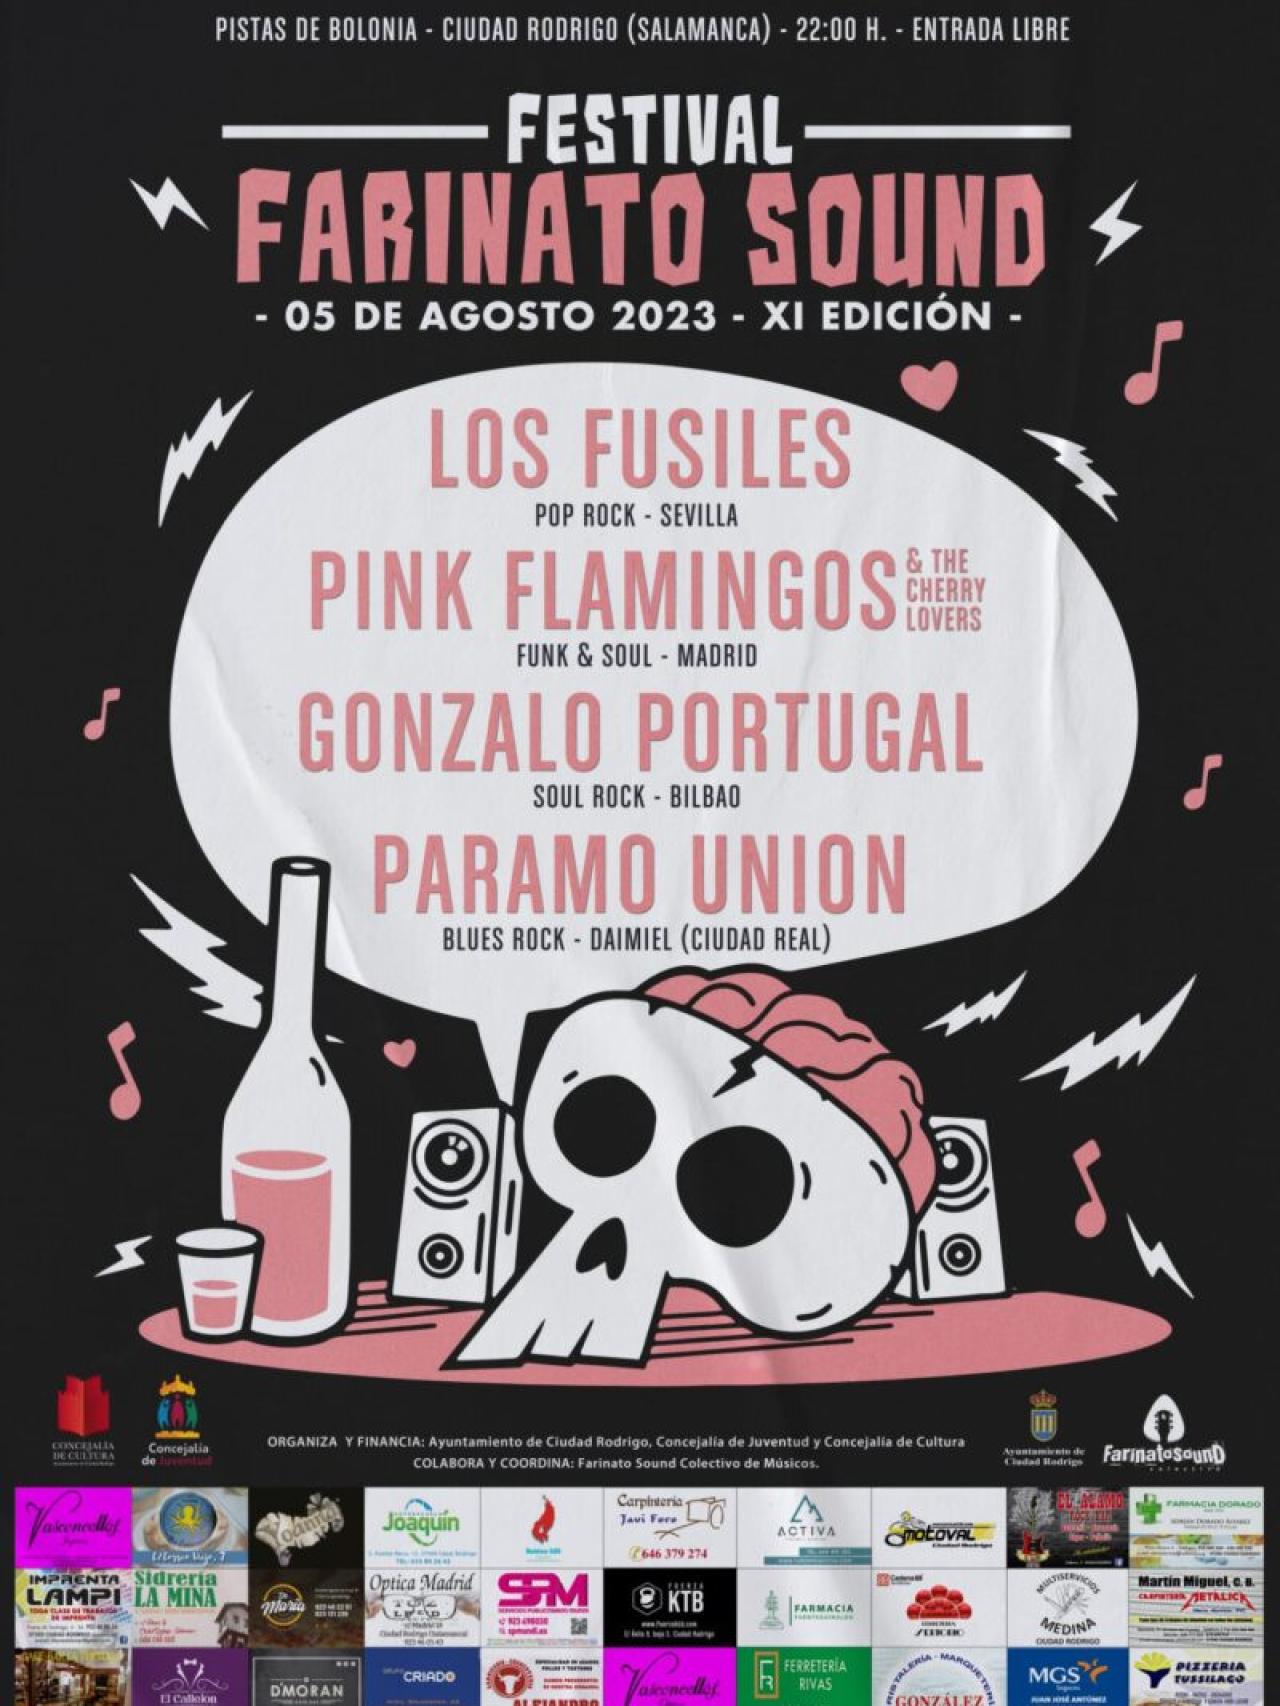 Cartel de Farinato Sound 2023